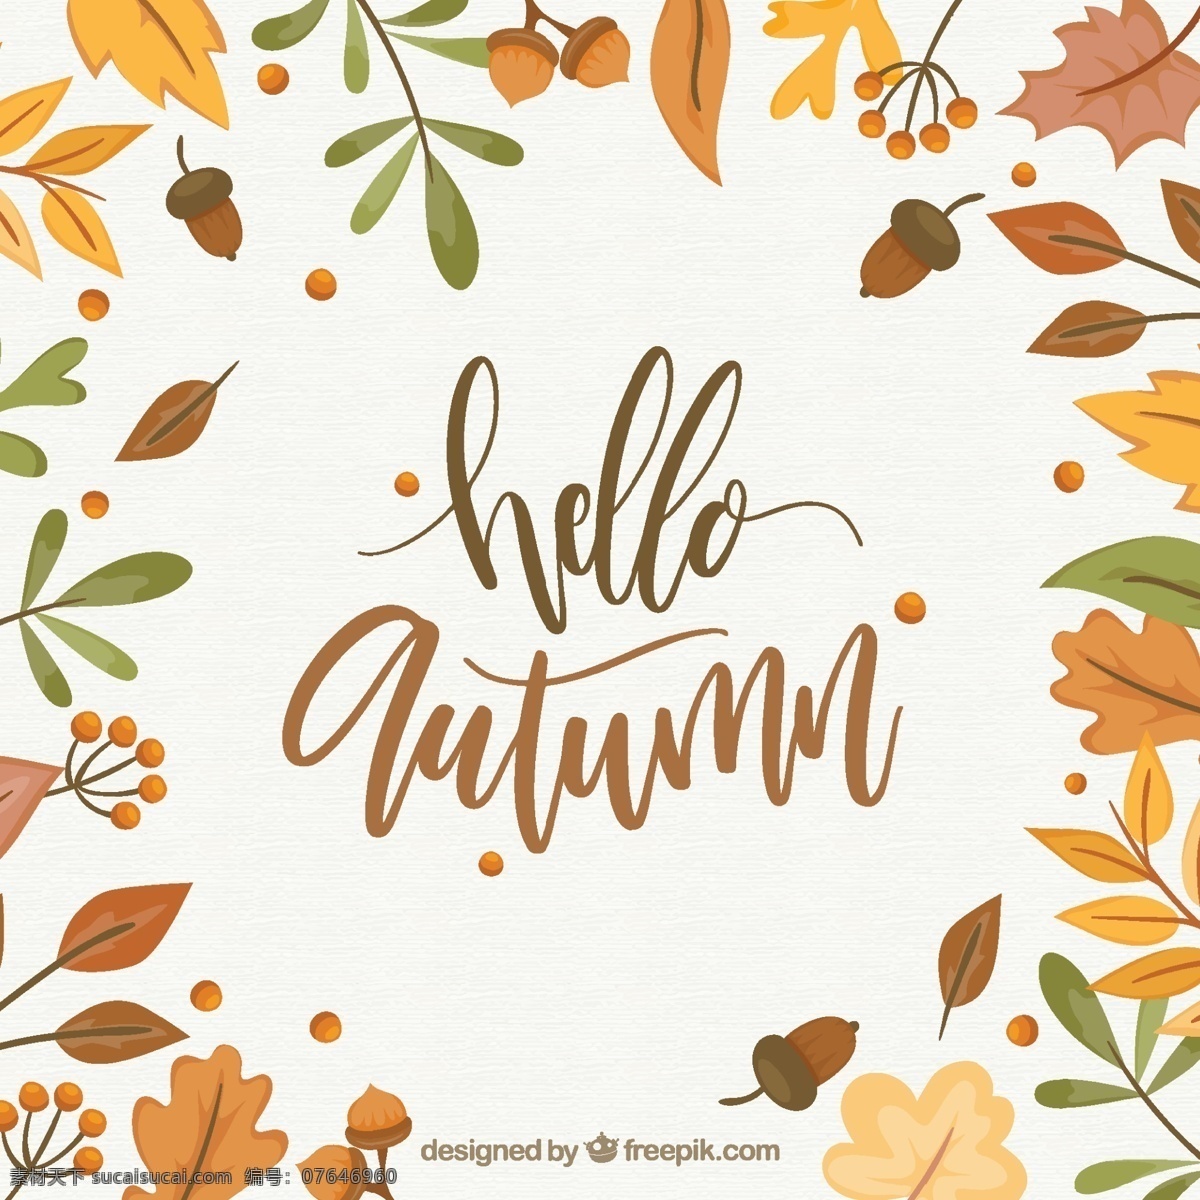 你好 秋天的背景 背景 水彩 水 手 叶 自然 油漆 水彩背景 壁纸 秋天 艺术 色彩 树叶 墨水 丰富多彩 自然背景